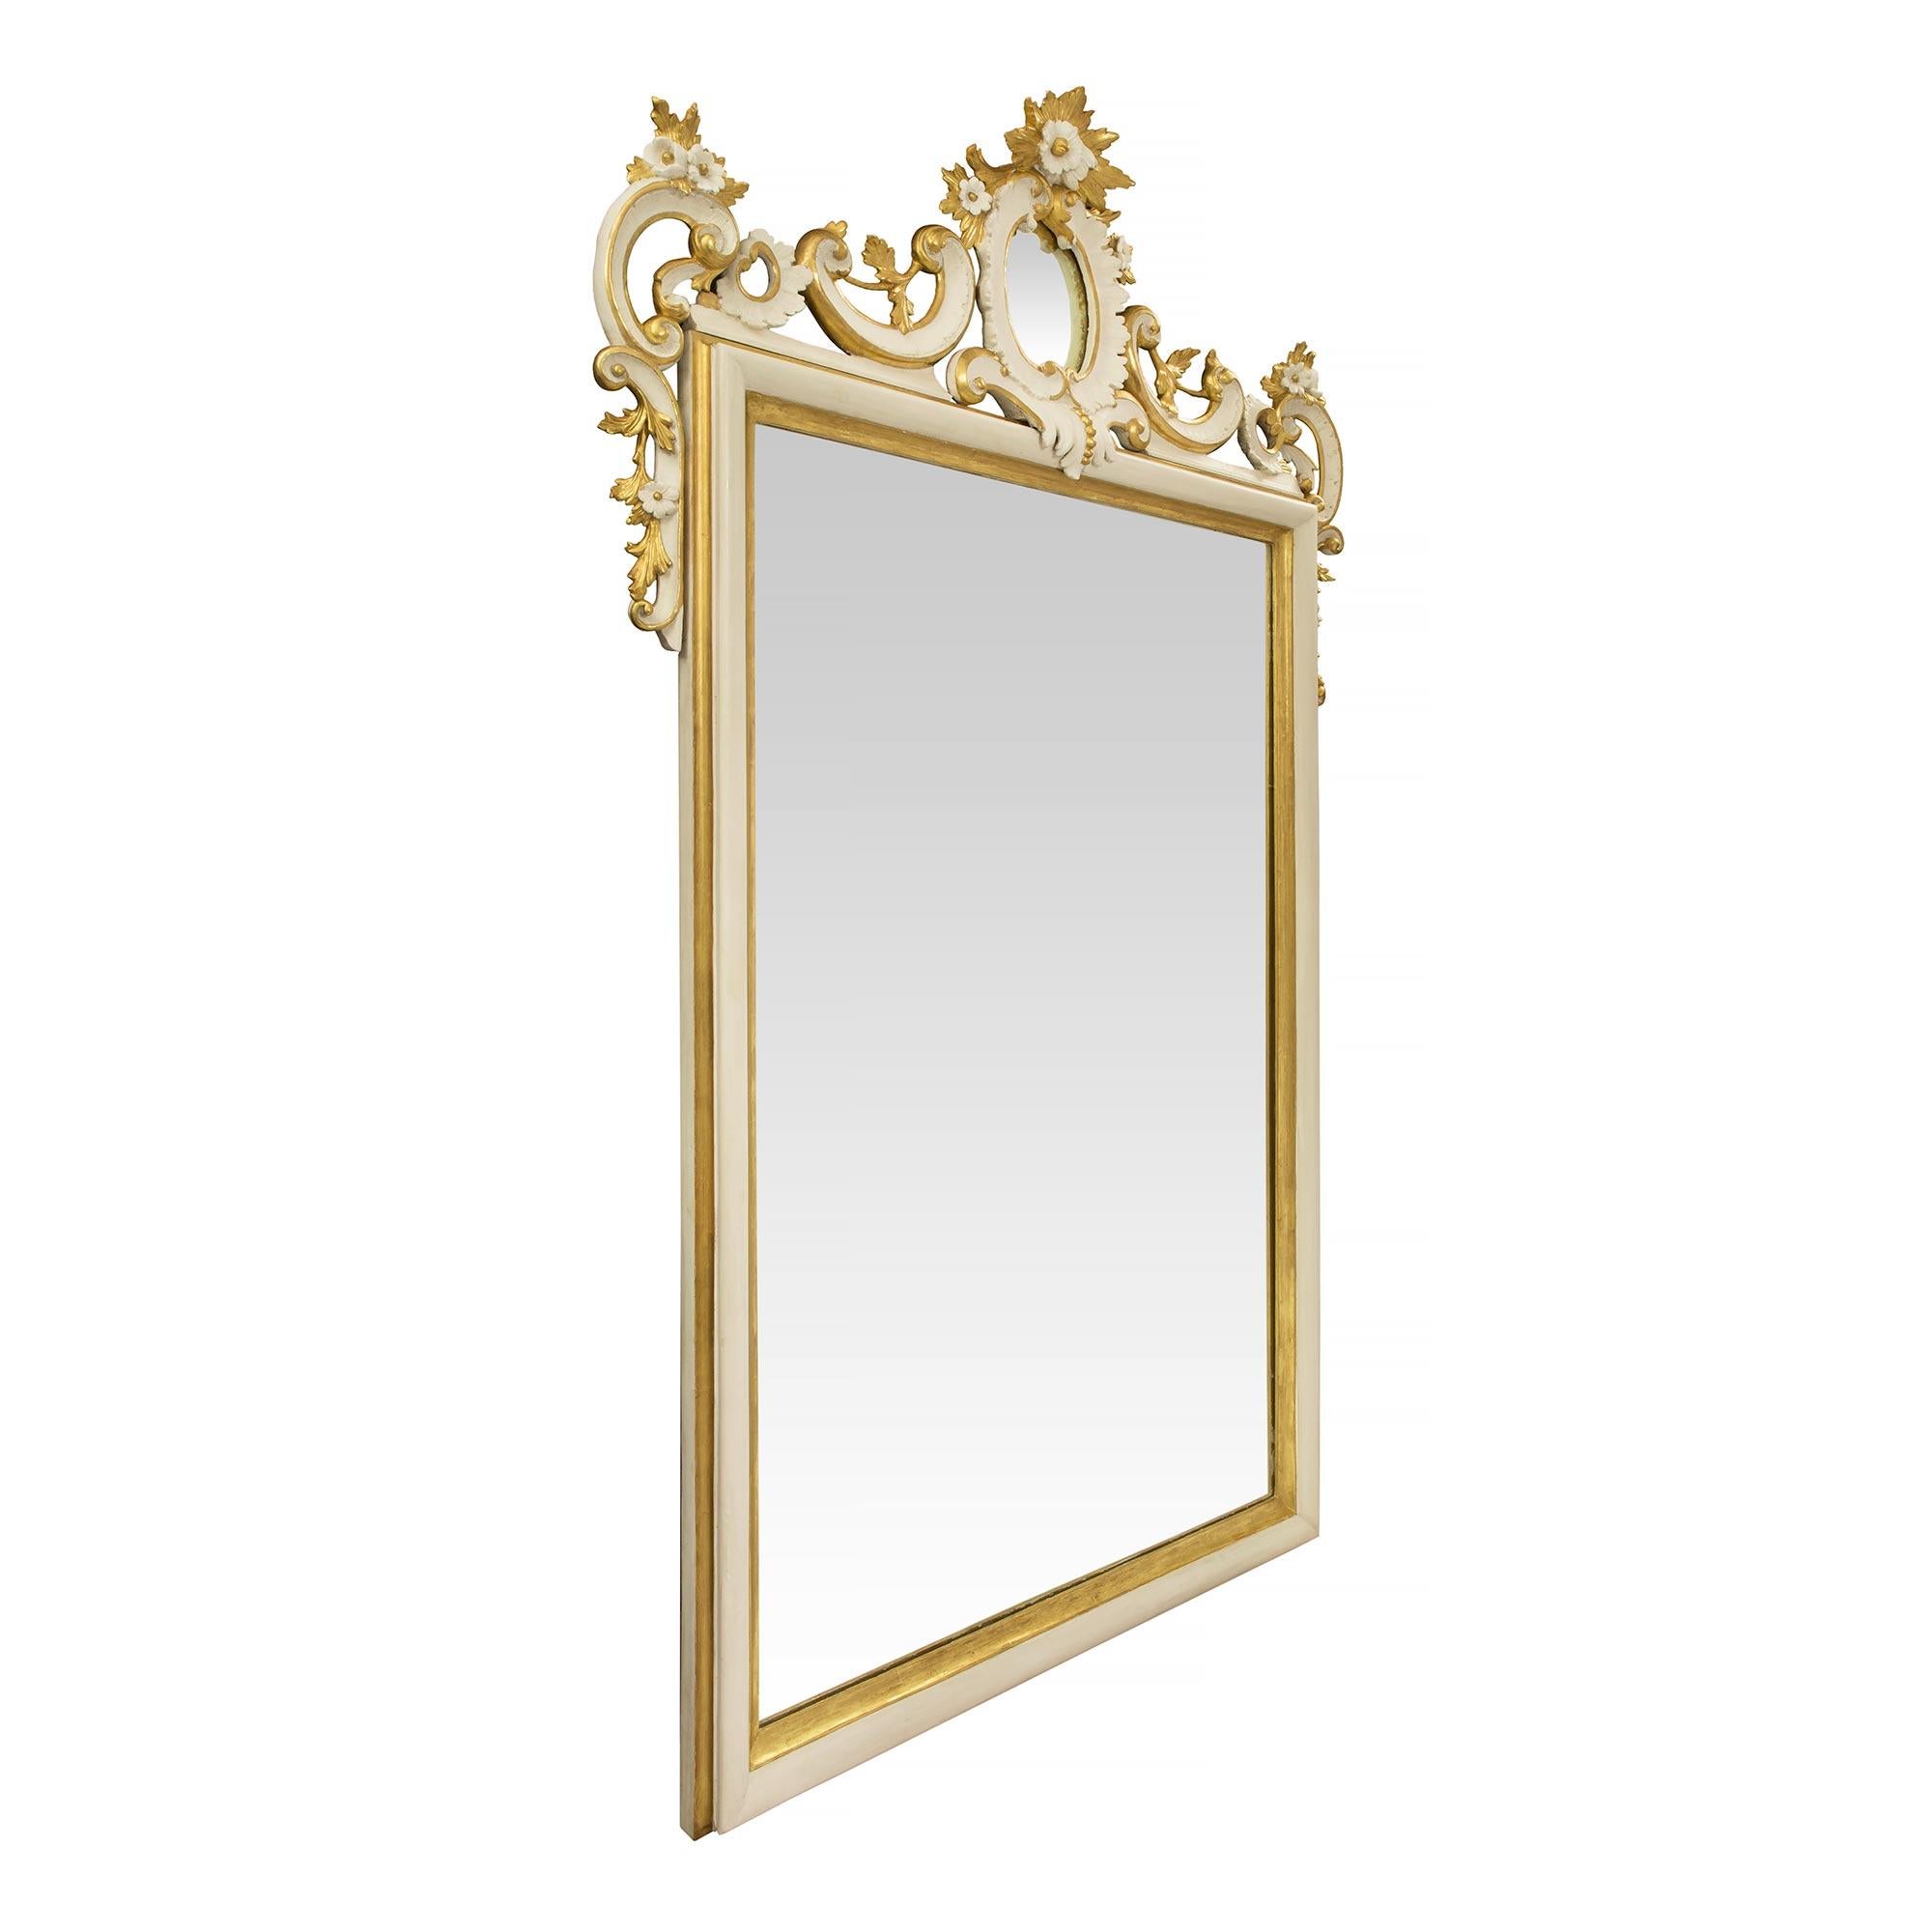 Un beau miroir italien du 19ème siècle en bois blanc polychrome et doré. La plaque de miroir est encadrée d'une fine bordure rectangulaire polychrome blanche et mouchetée de bois doré. La saisissante couronne supérieure percée est centrée par une